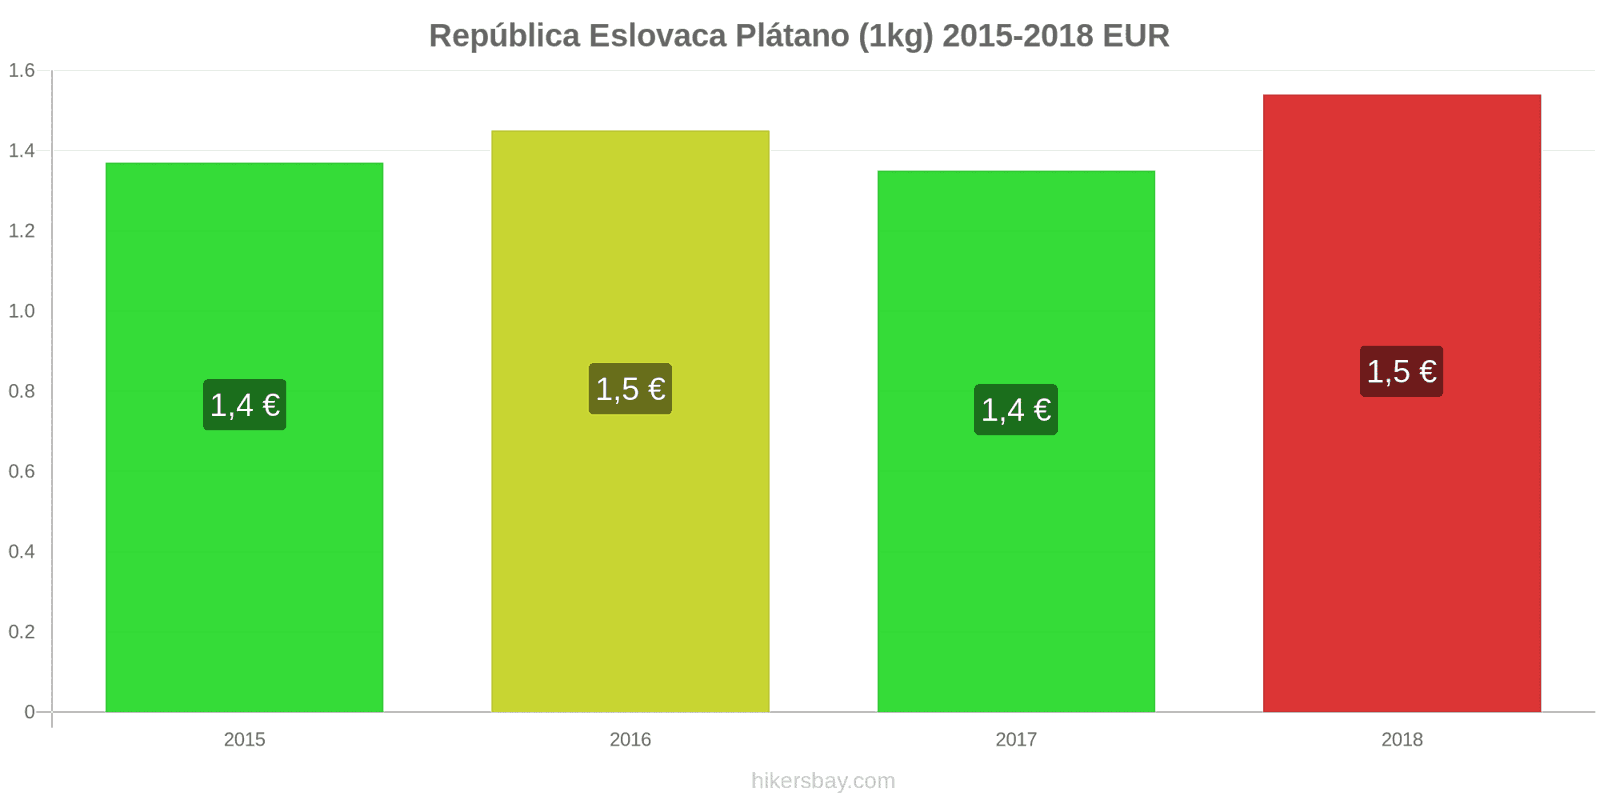 República Eslovaca cambios de precios Plátanos (1kg) hikersbay.com